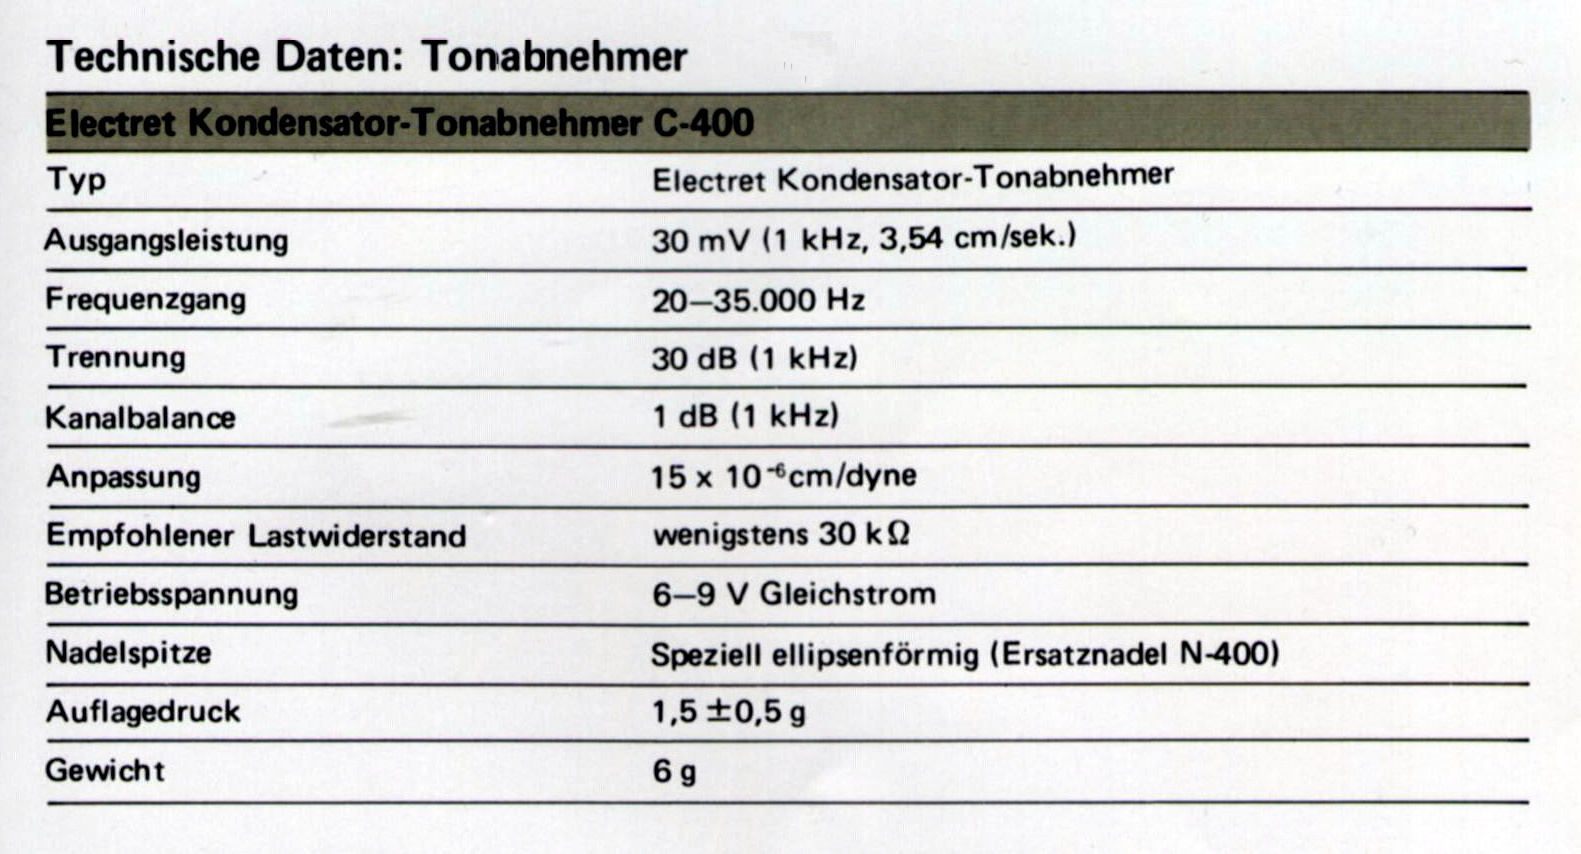 Toshiba C-400 Daten-1979.jpg